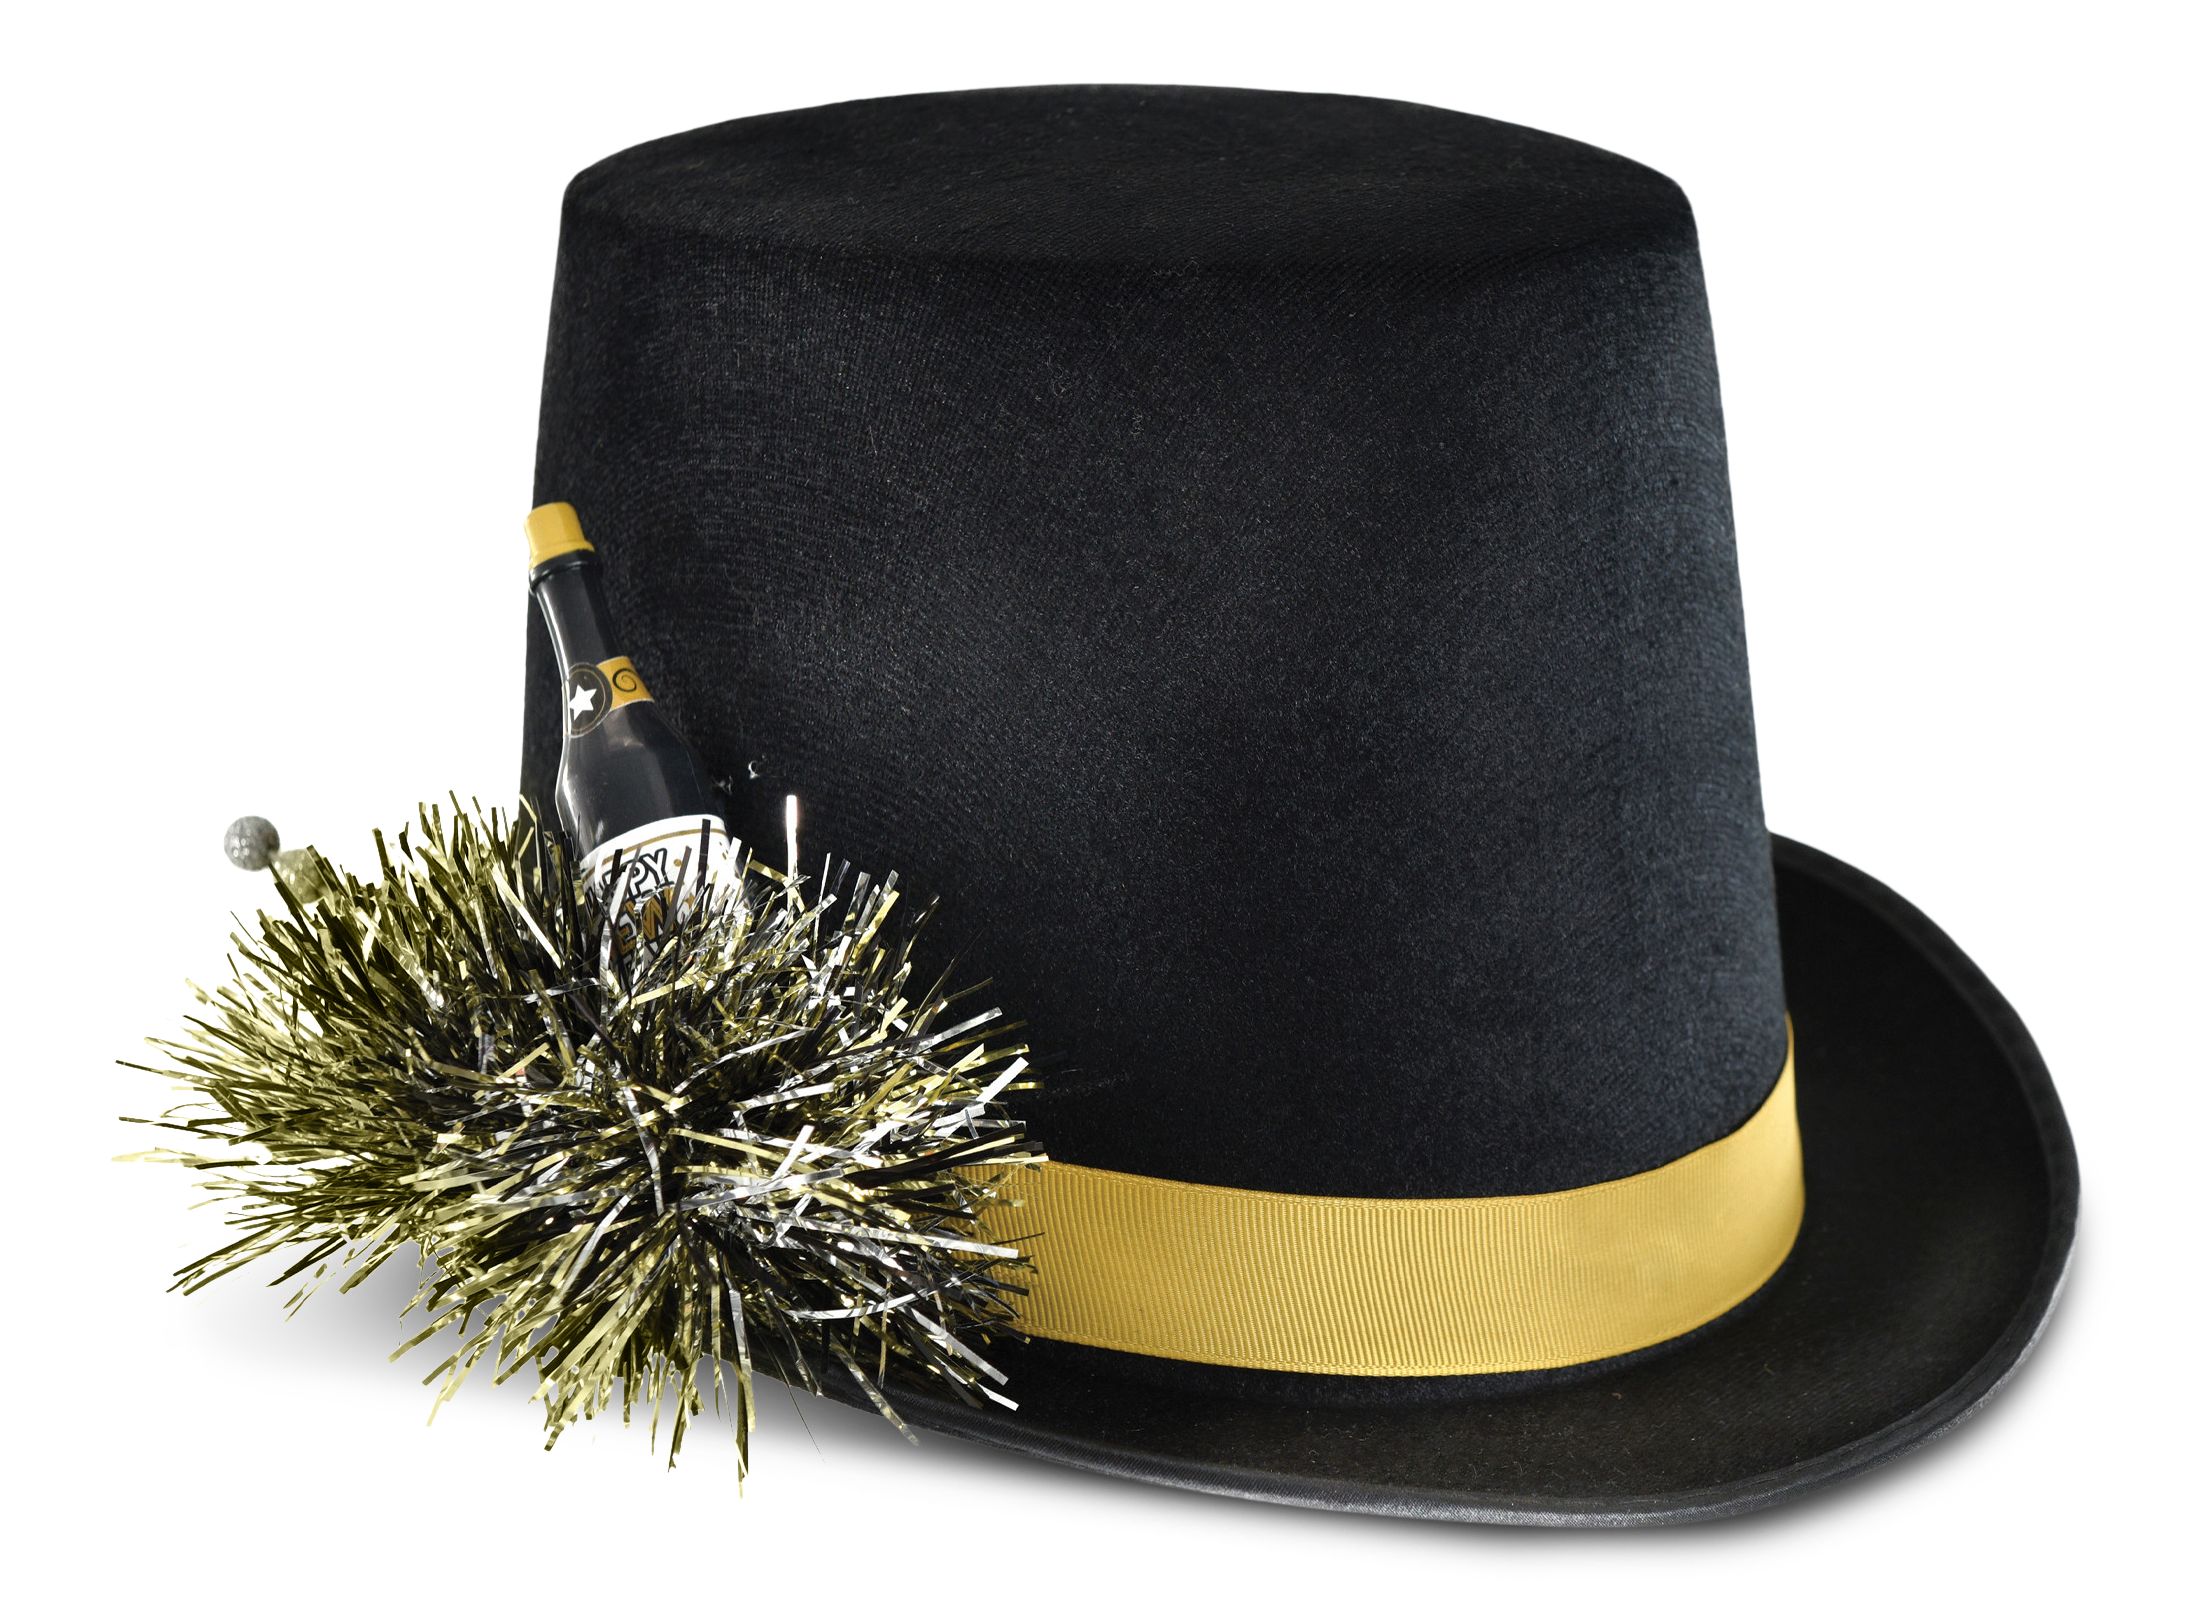 Chapeau haut-de-forme du Nouvel An, noir, or et argent